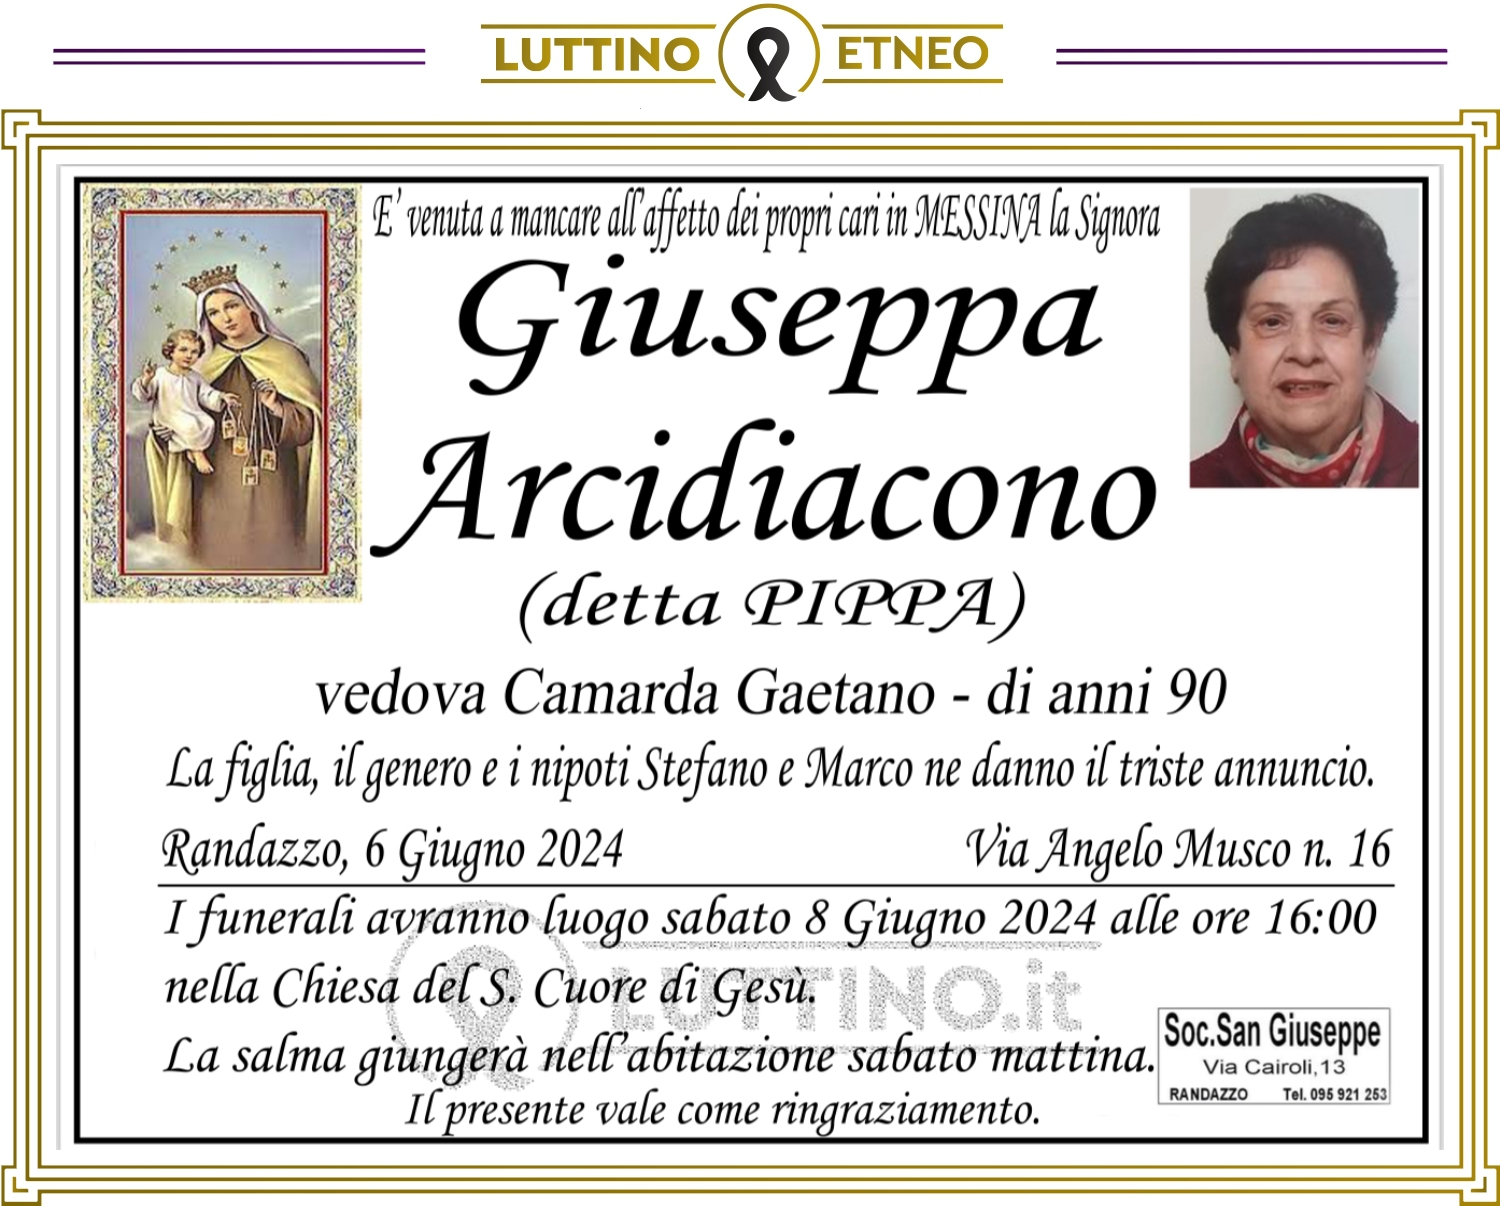 Giuseppa Arcidiacono